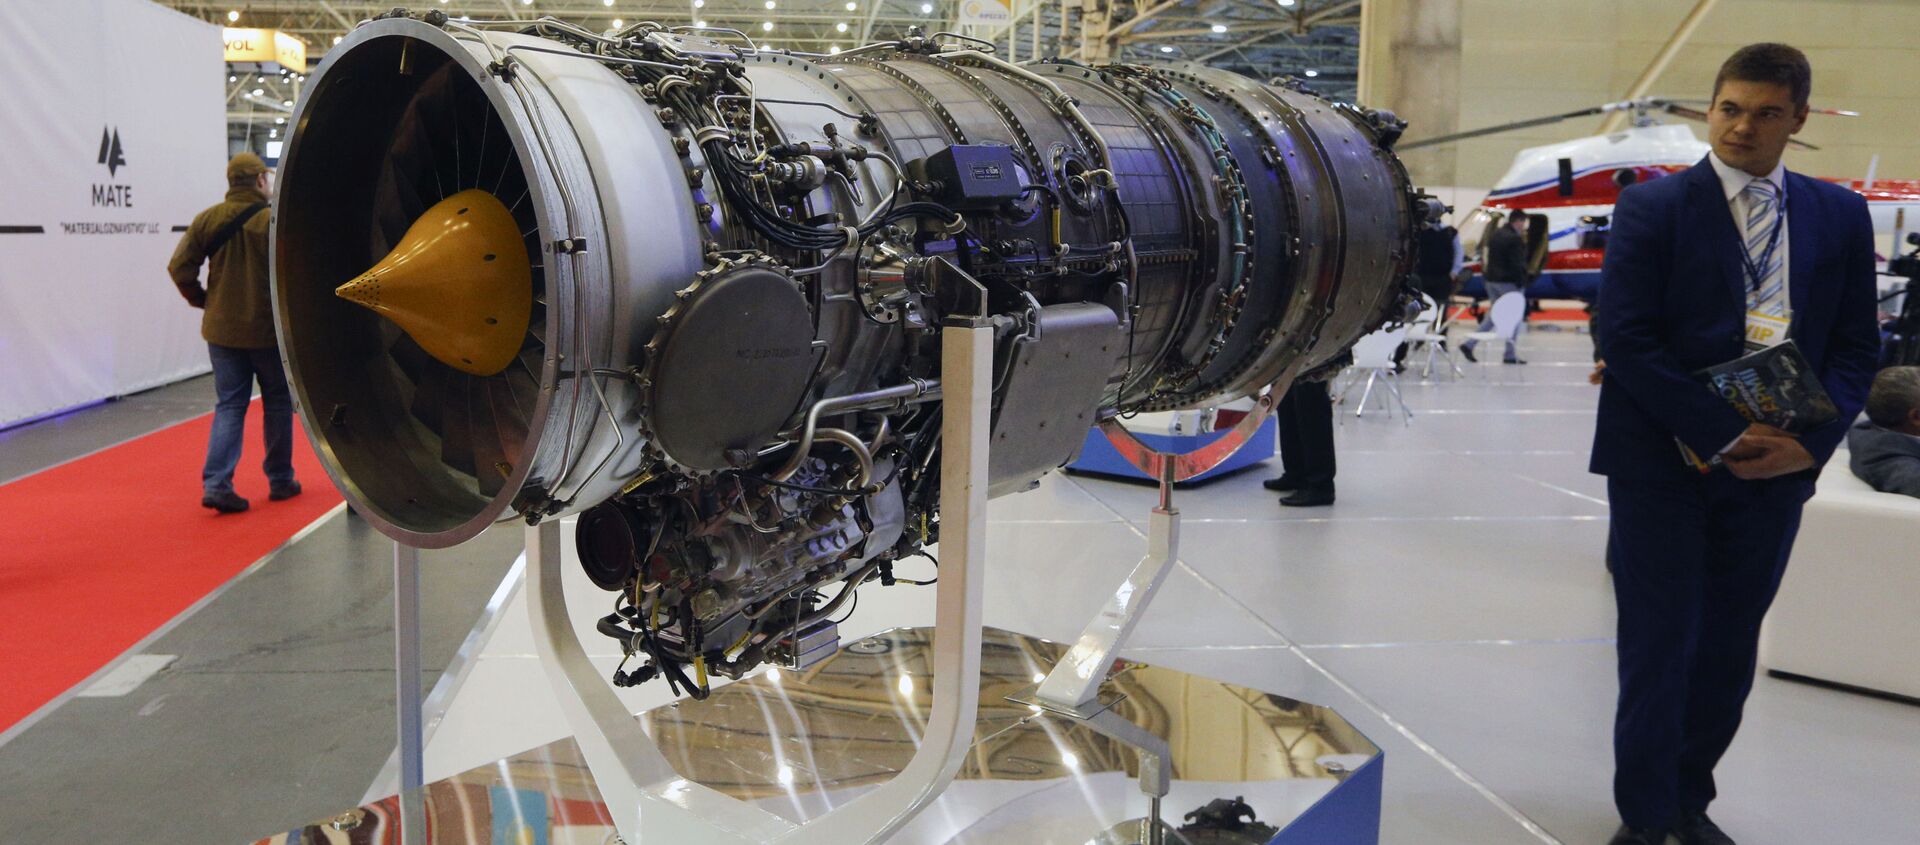 Động cơ máy bay do Motor Sich phát triển, được giới thiệu tại triển lãm ở Kiev, Ukraina. - Sputnik Việt Nam, 1920, 26.03.2021